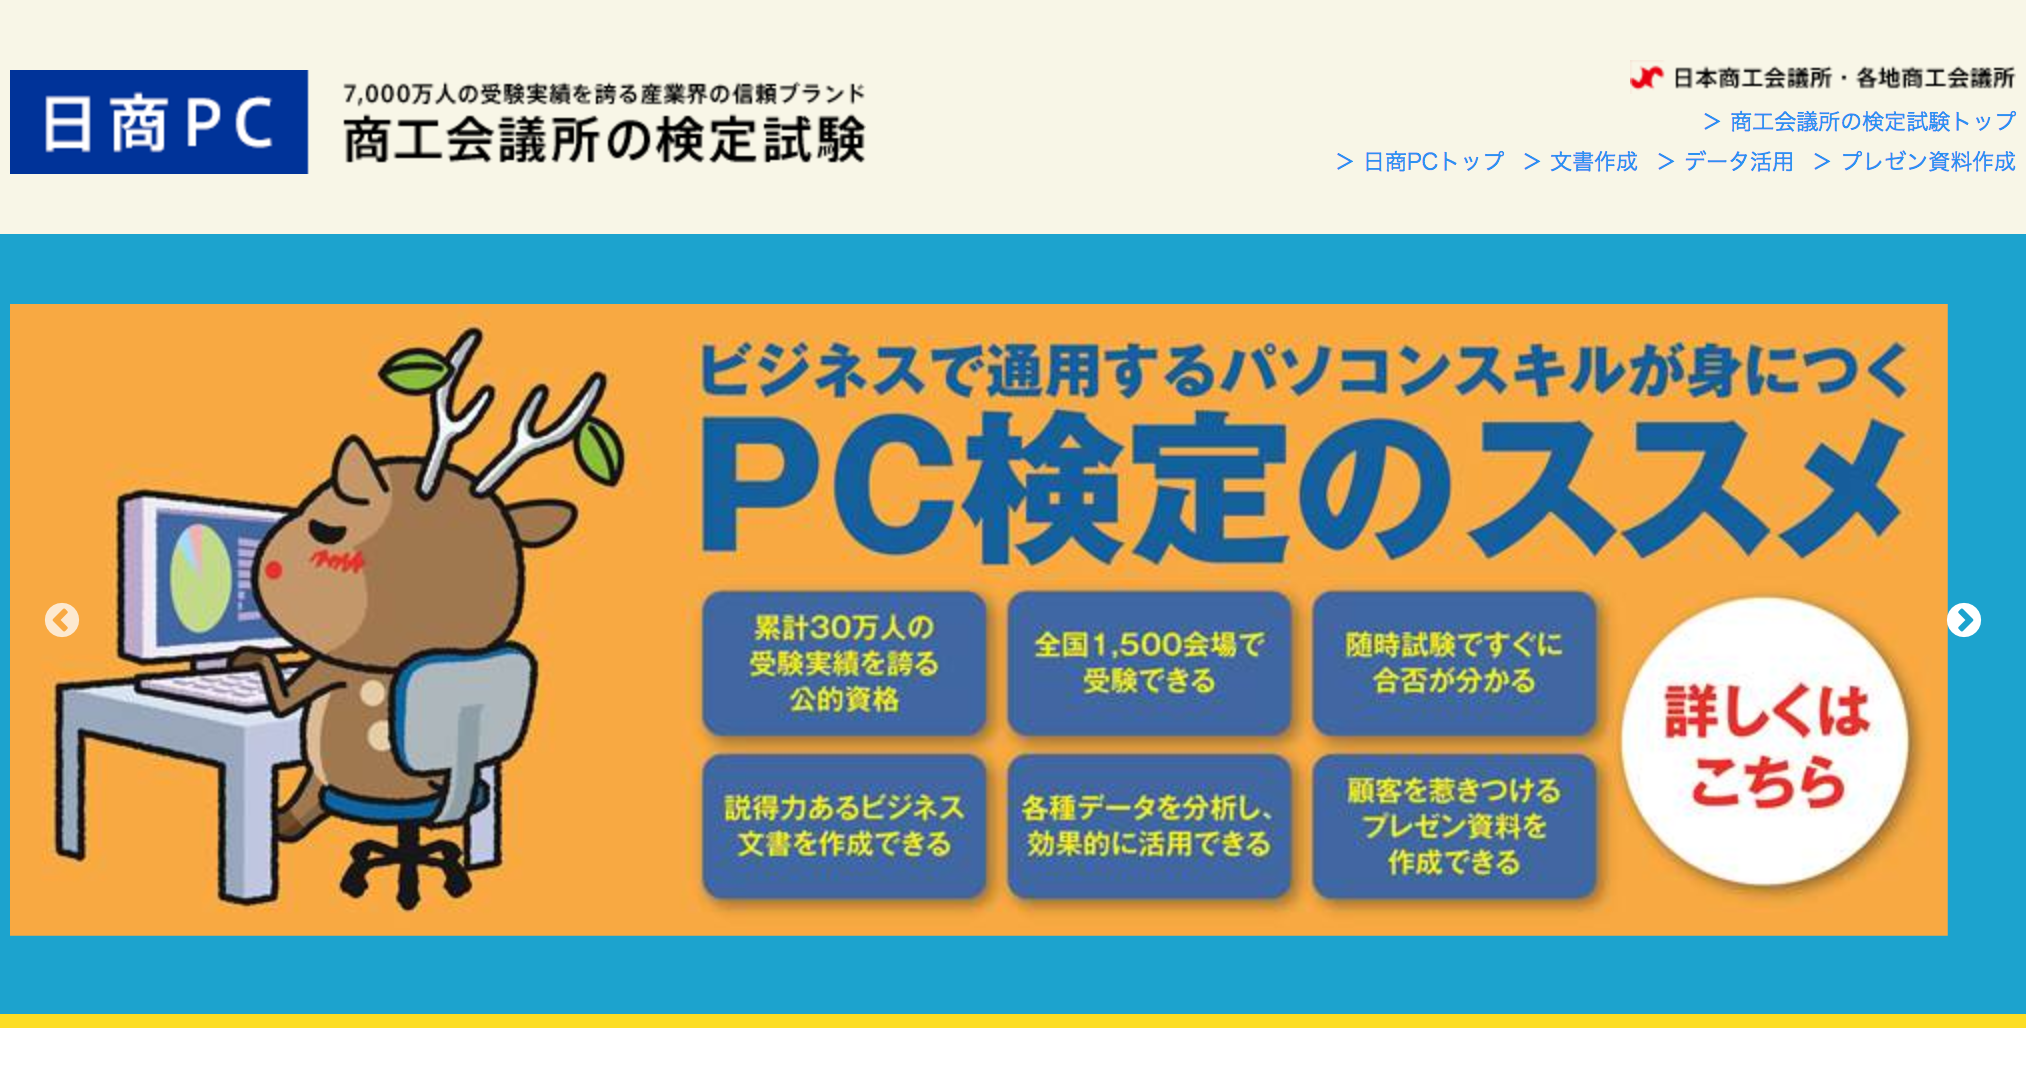 FireShot Capture 236 - 日商PC I 商工会議所の検定試験 - https___www.kentei.ne.jp_pc